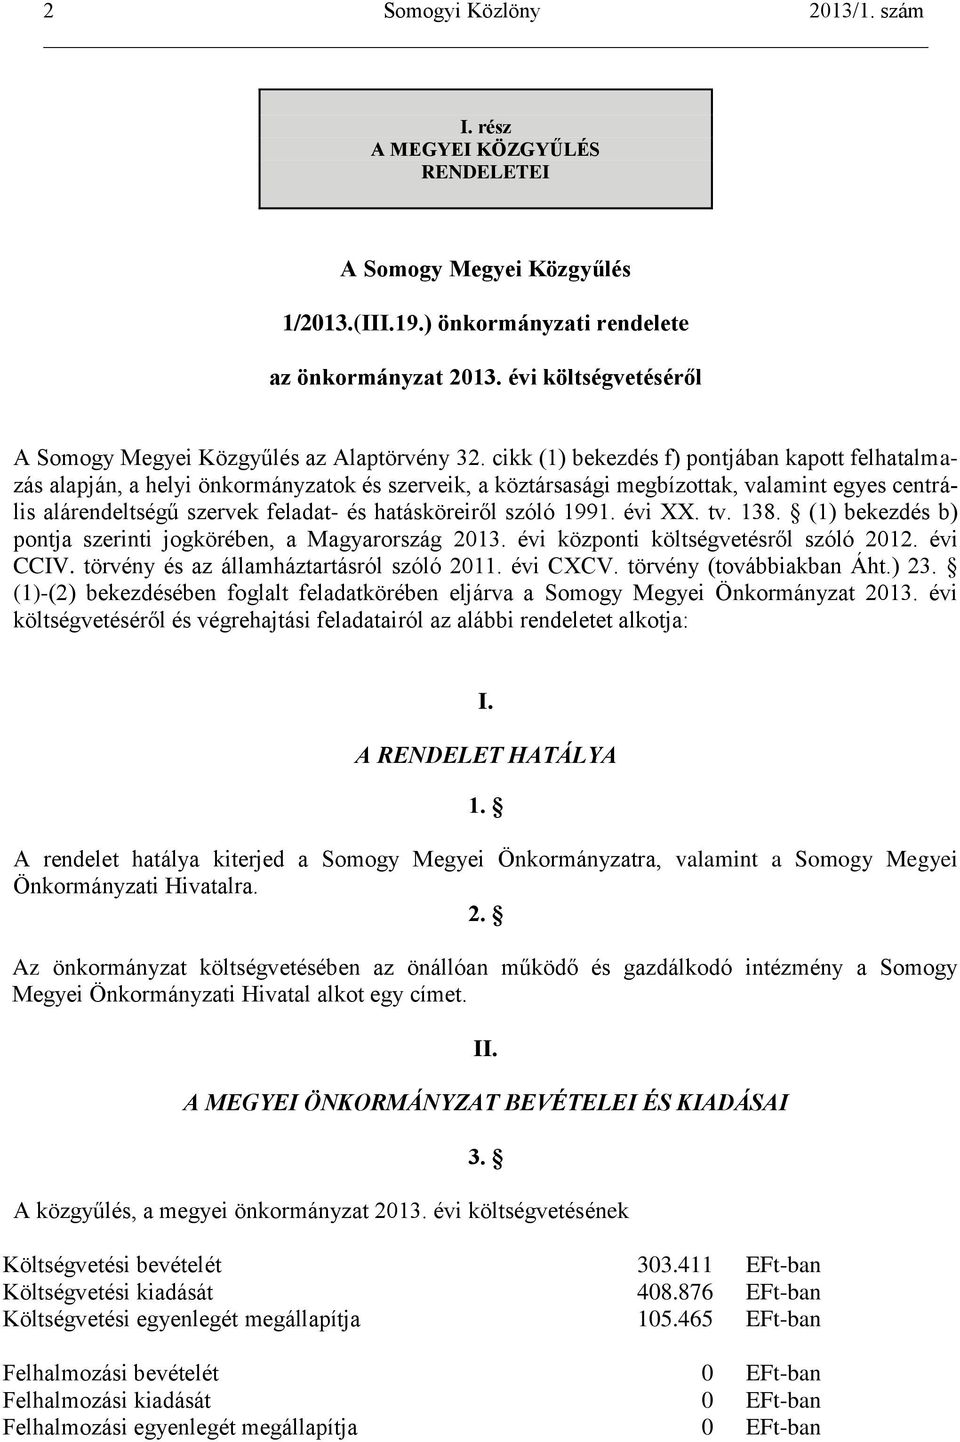 szóló 1991. évi XX. tv. 138. (1) bekezdés b) pontja szerinti jogkörében, a Magyarország 2013. évi központi költségvetésről szóló 2012. évi CCIV. törvény és az államháztartásról szóló 2011. évi CXCV.